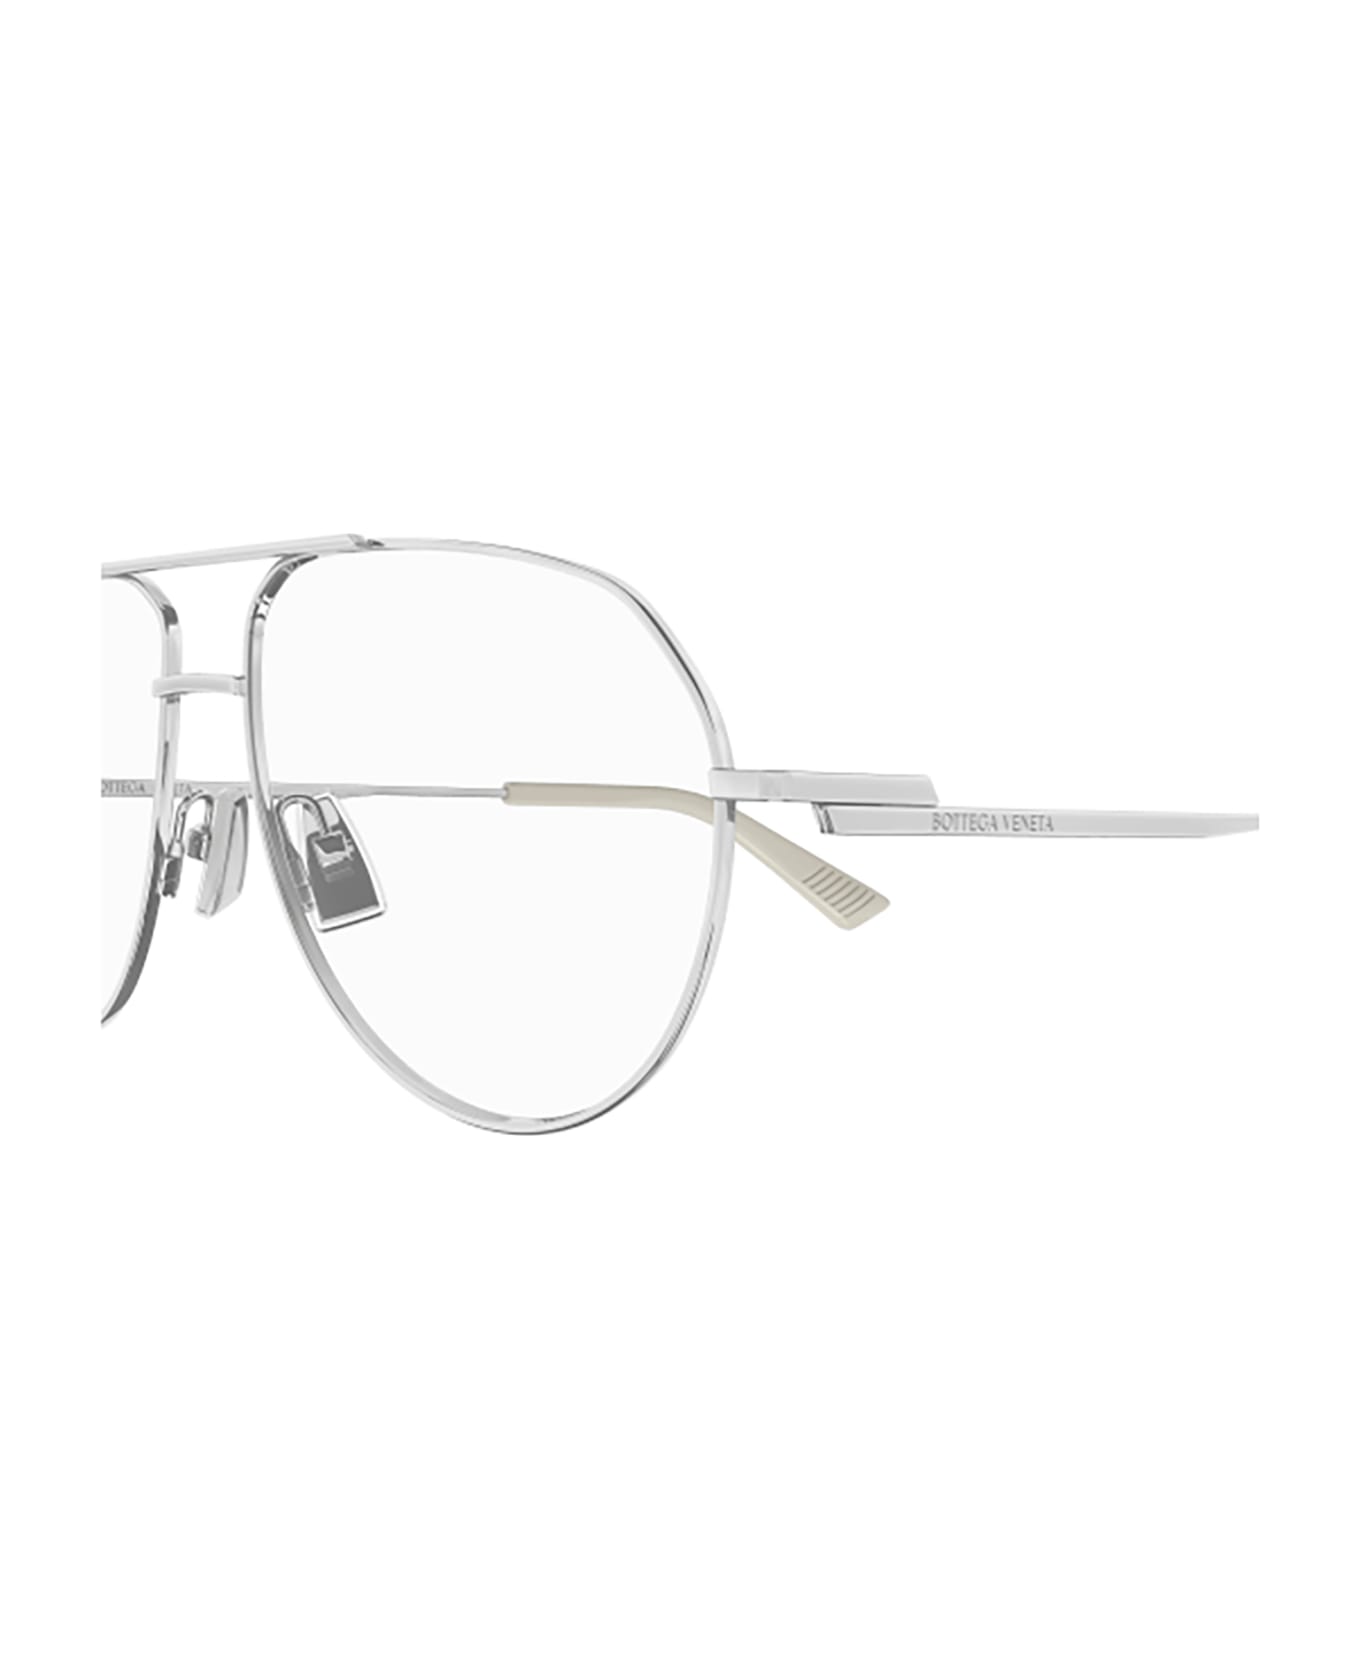 Bottega Veneta Eyewear Bv1302o Glasses - 002 silver silver transpa アイウェア